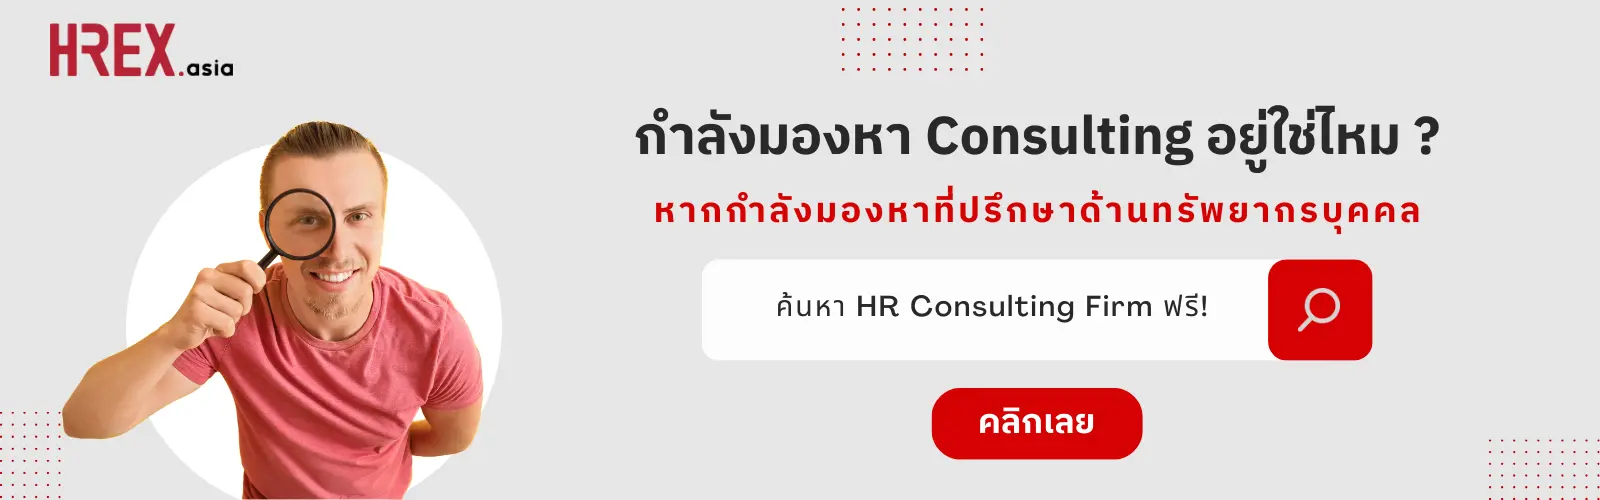 CTA - HR Consulting